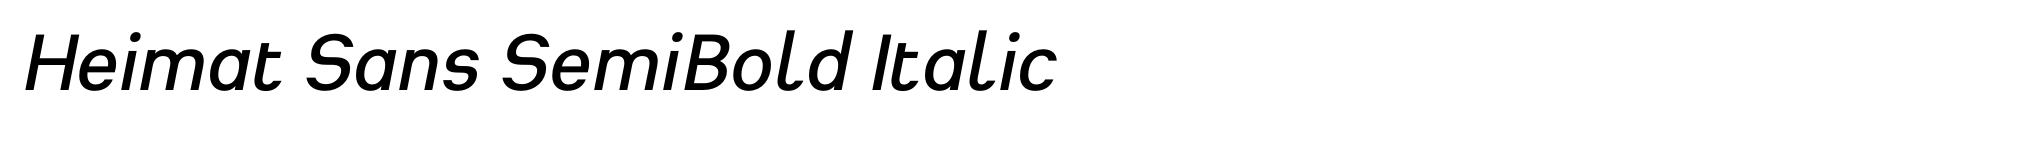 Heimat Sans SemiBold Italic image